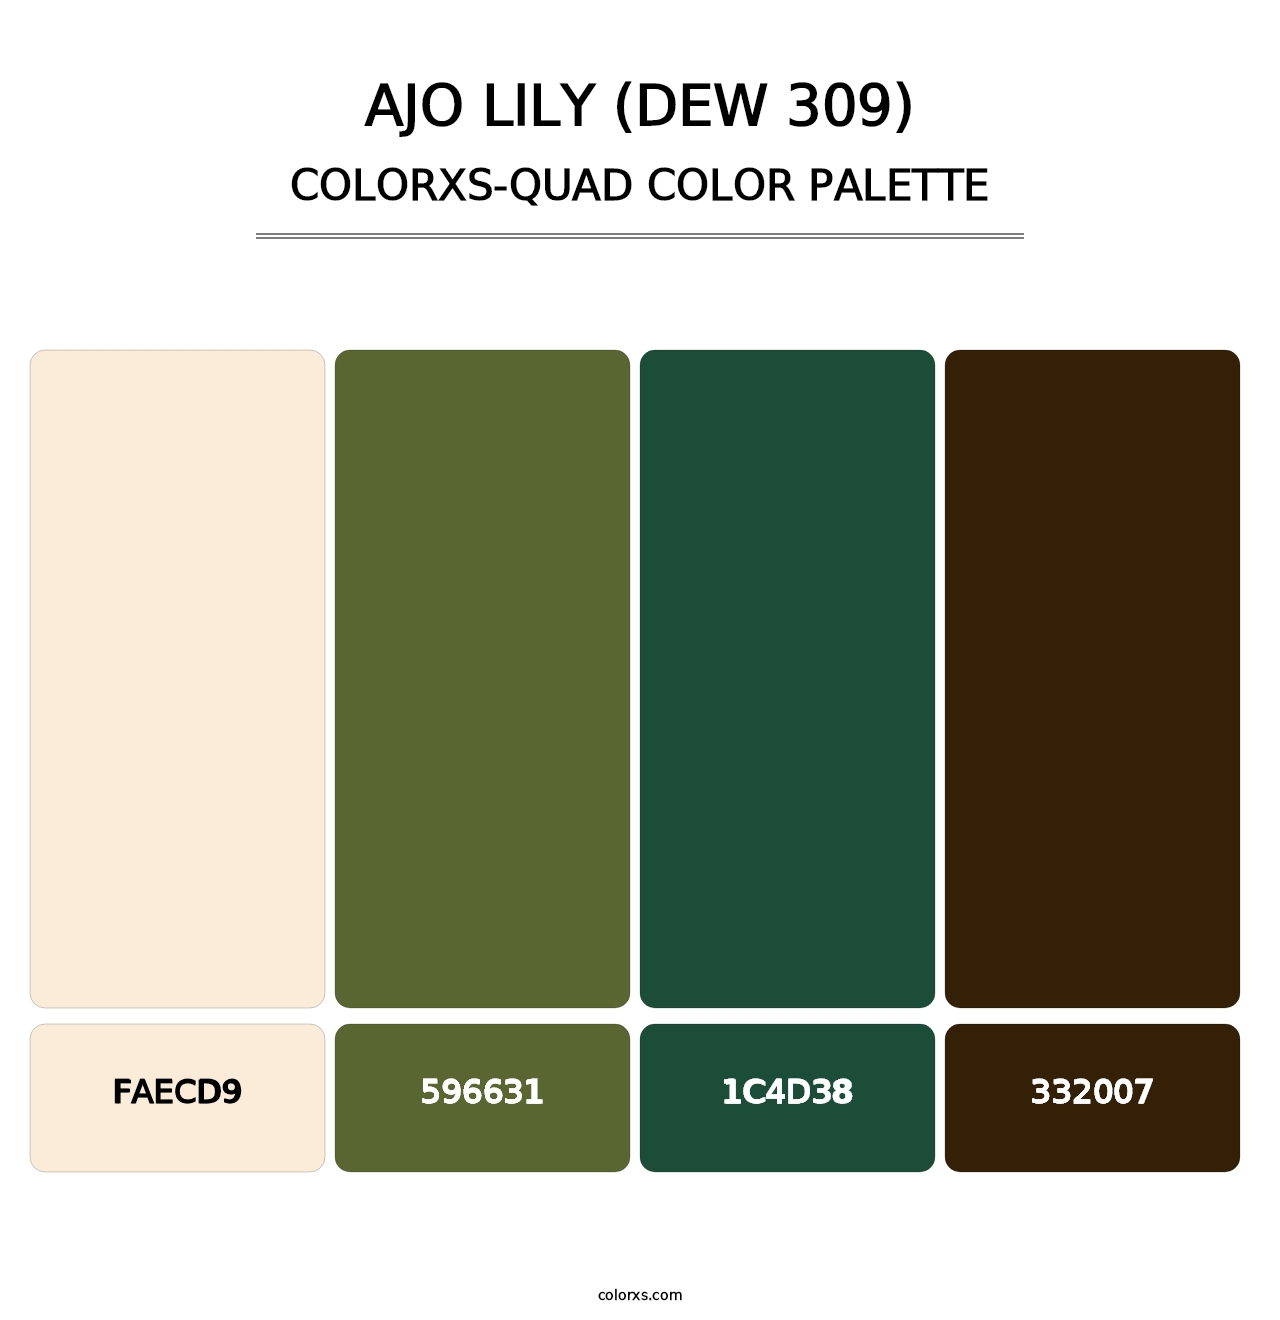 Ajo Lily (DEW 309) - Colorxs Quad Palette